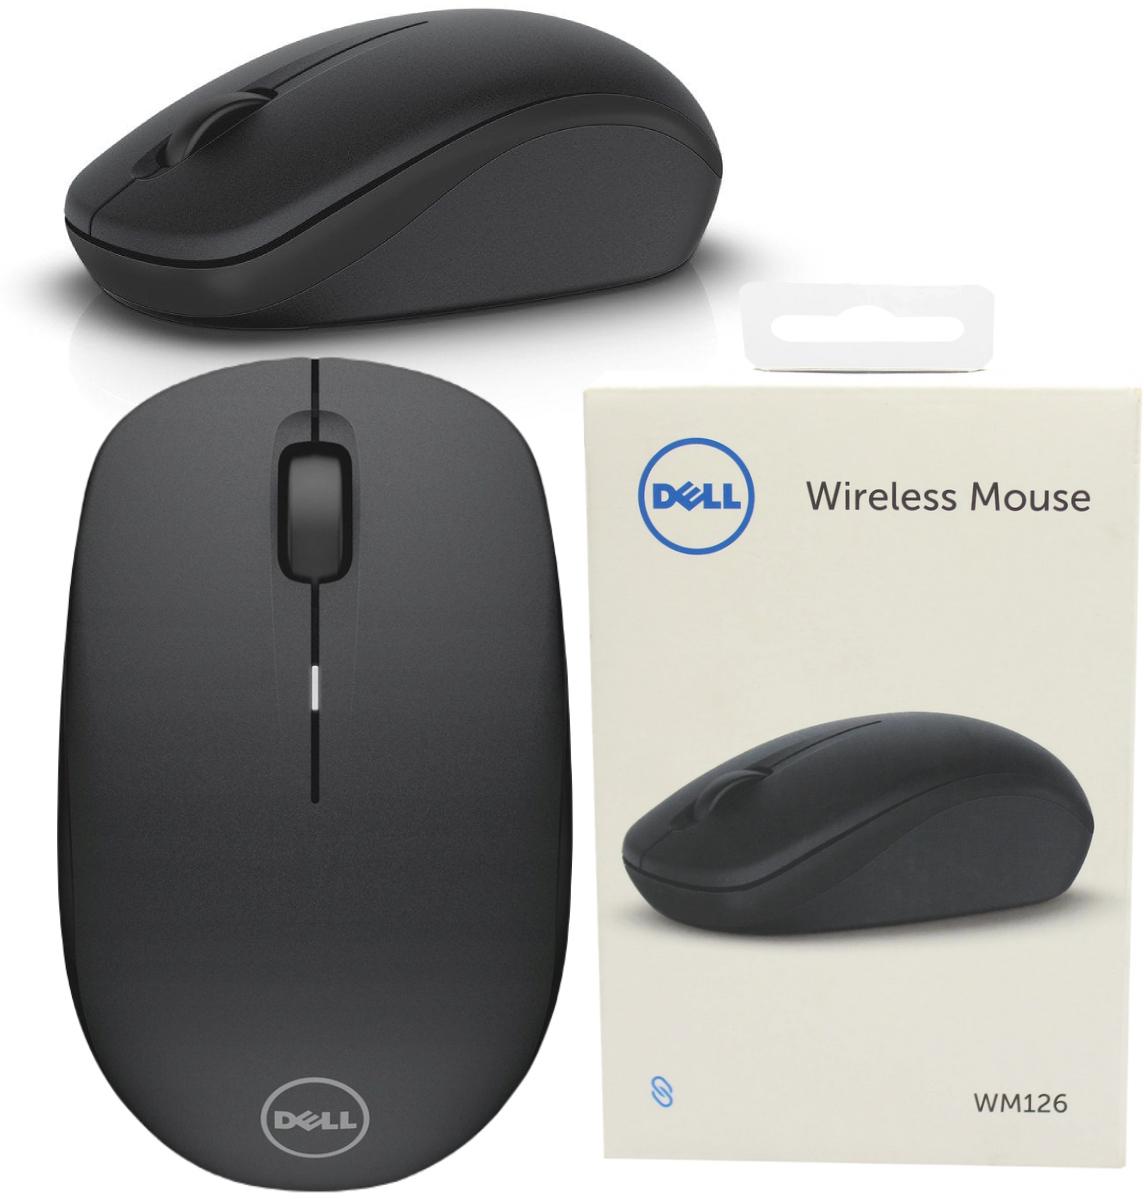 Bezprzewodowa mysz optyczna Dell WM126 Wireless Optical Mouse - najważniejsze cechy: